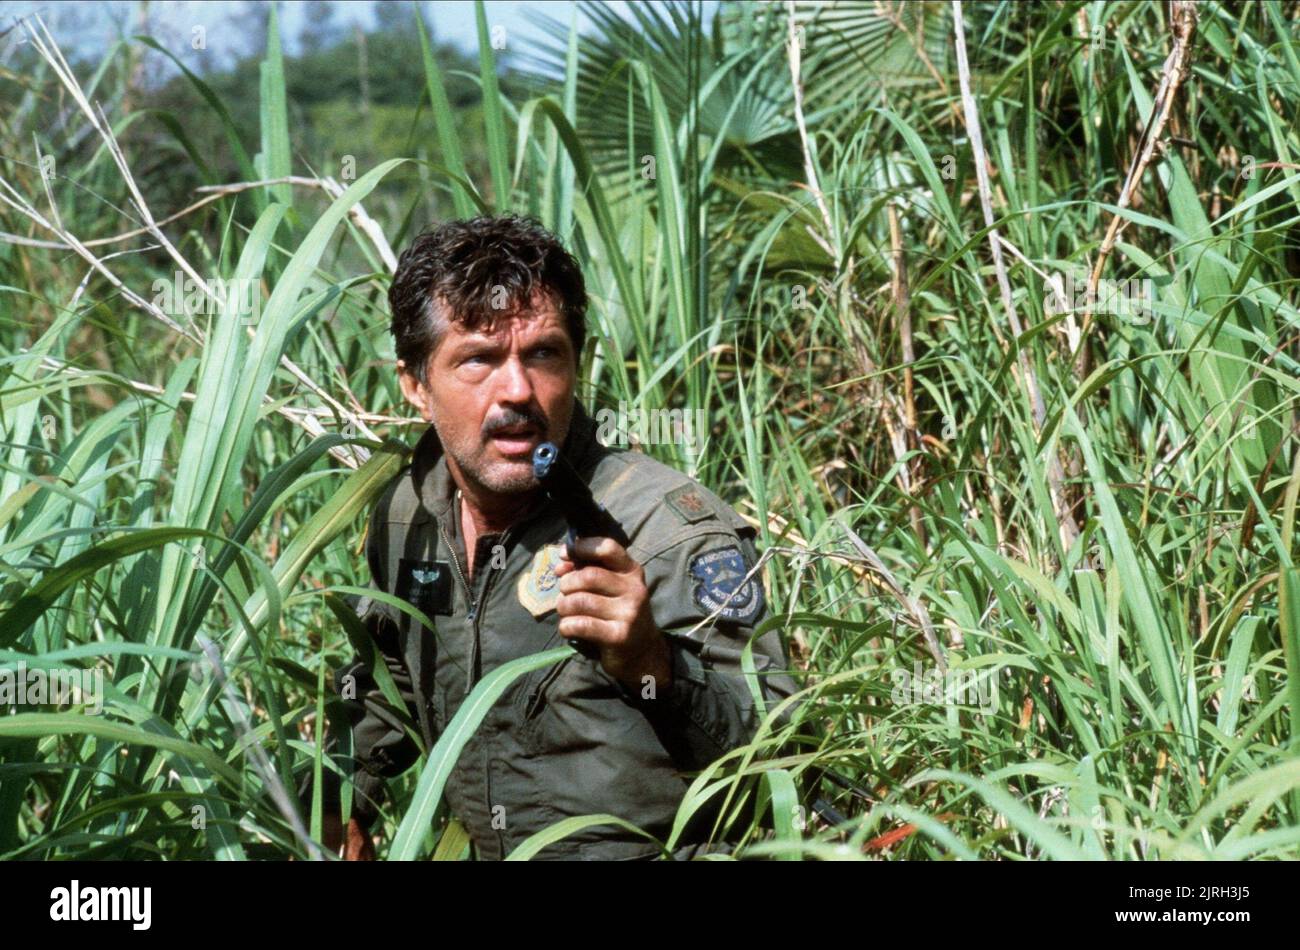 TOM SKERRITT, OPPOSING FORCE, 1986 Stock Photo - Alamy